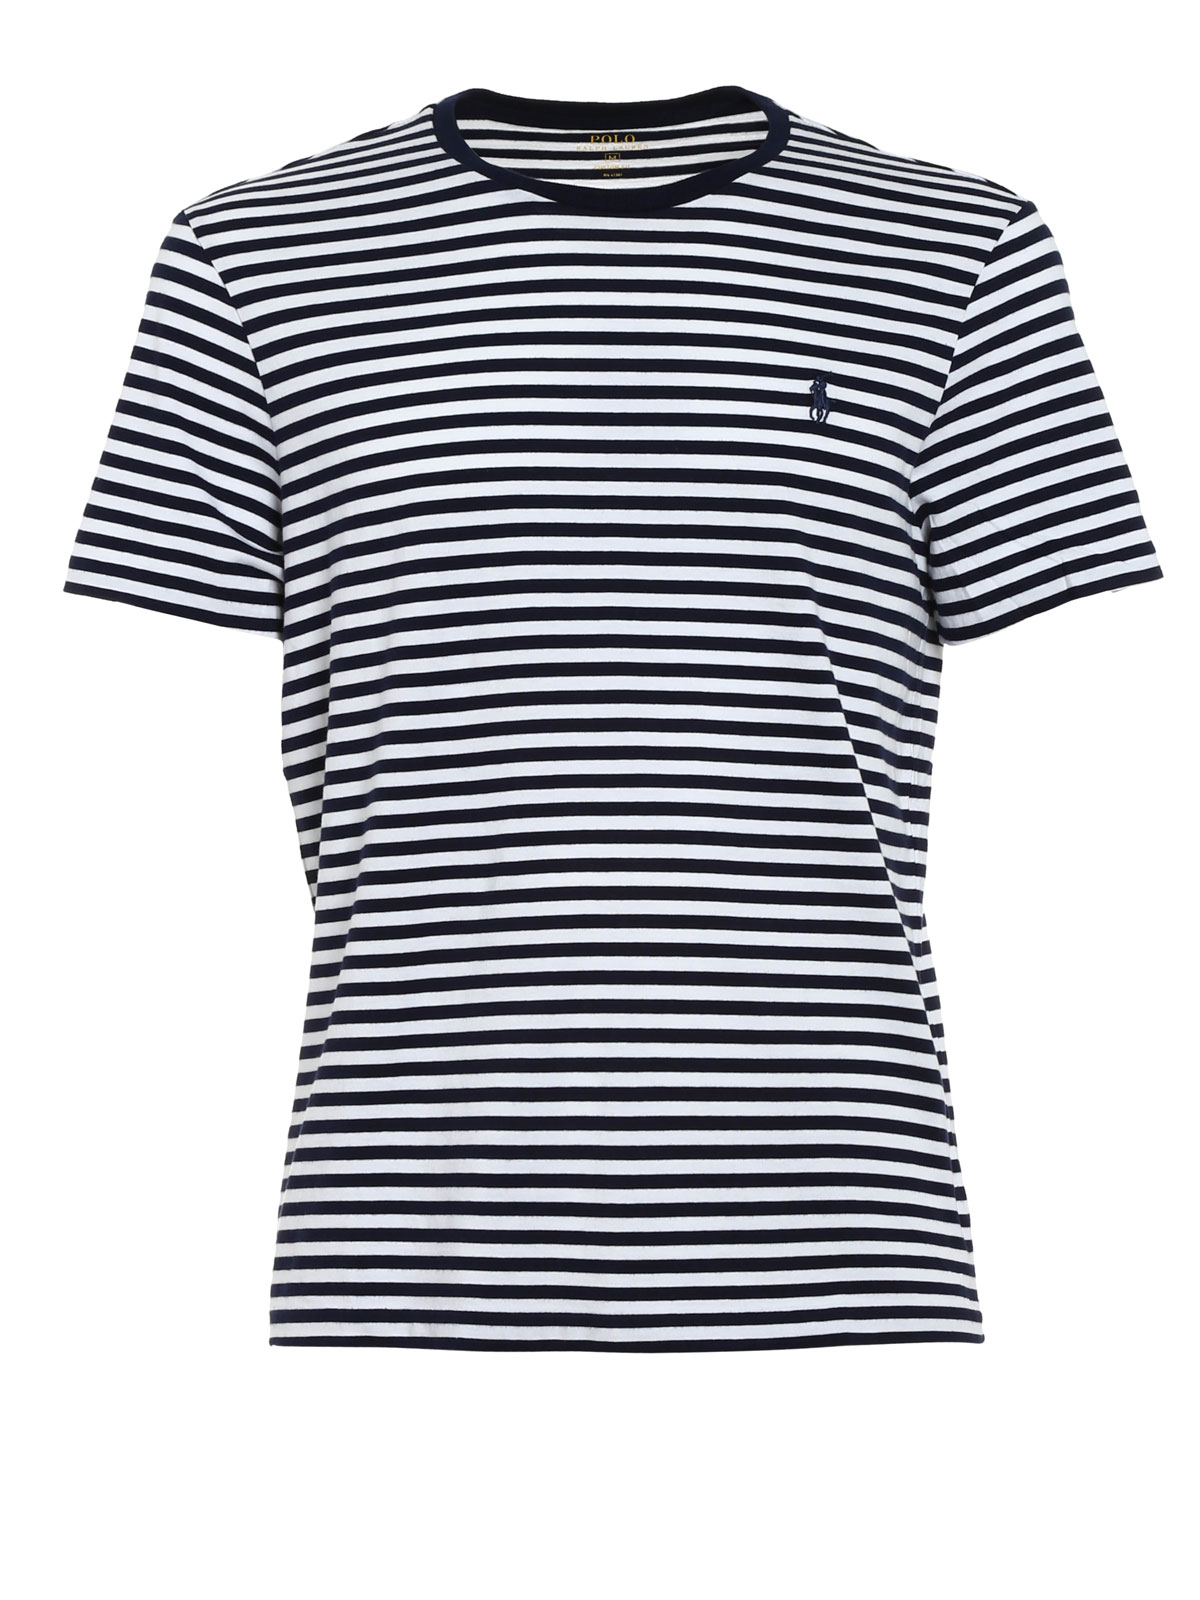 T-shirts Polo Ralph Lauren - Striped cotton T-shirt - A16KAA11C700D4KMY